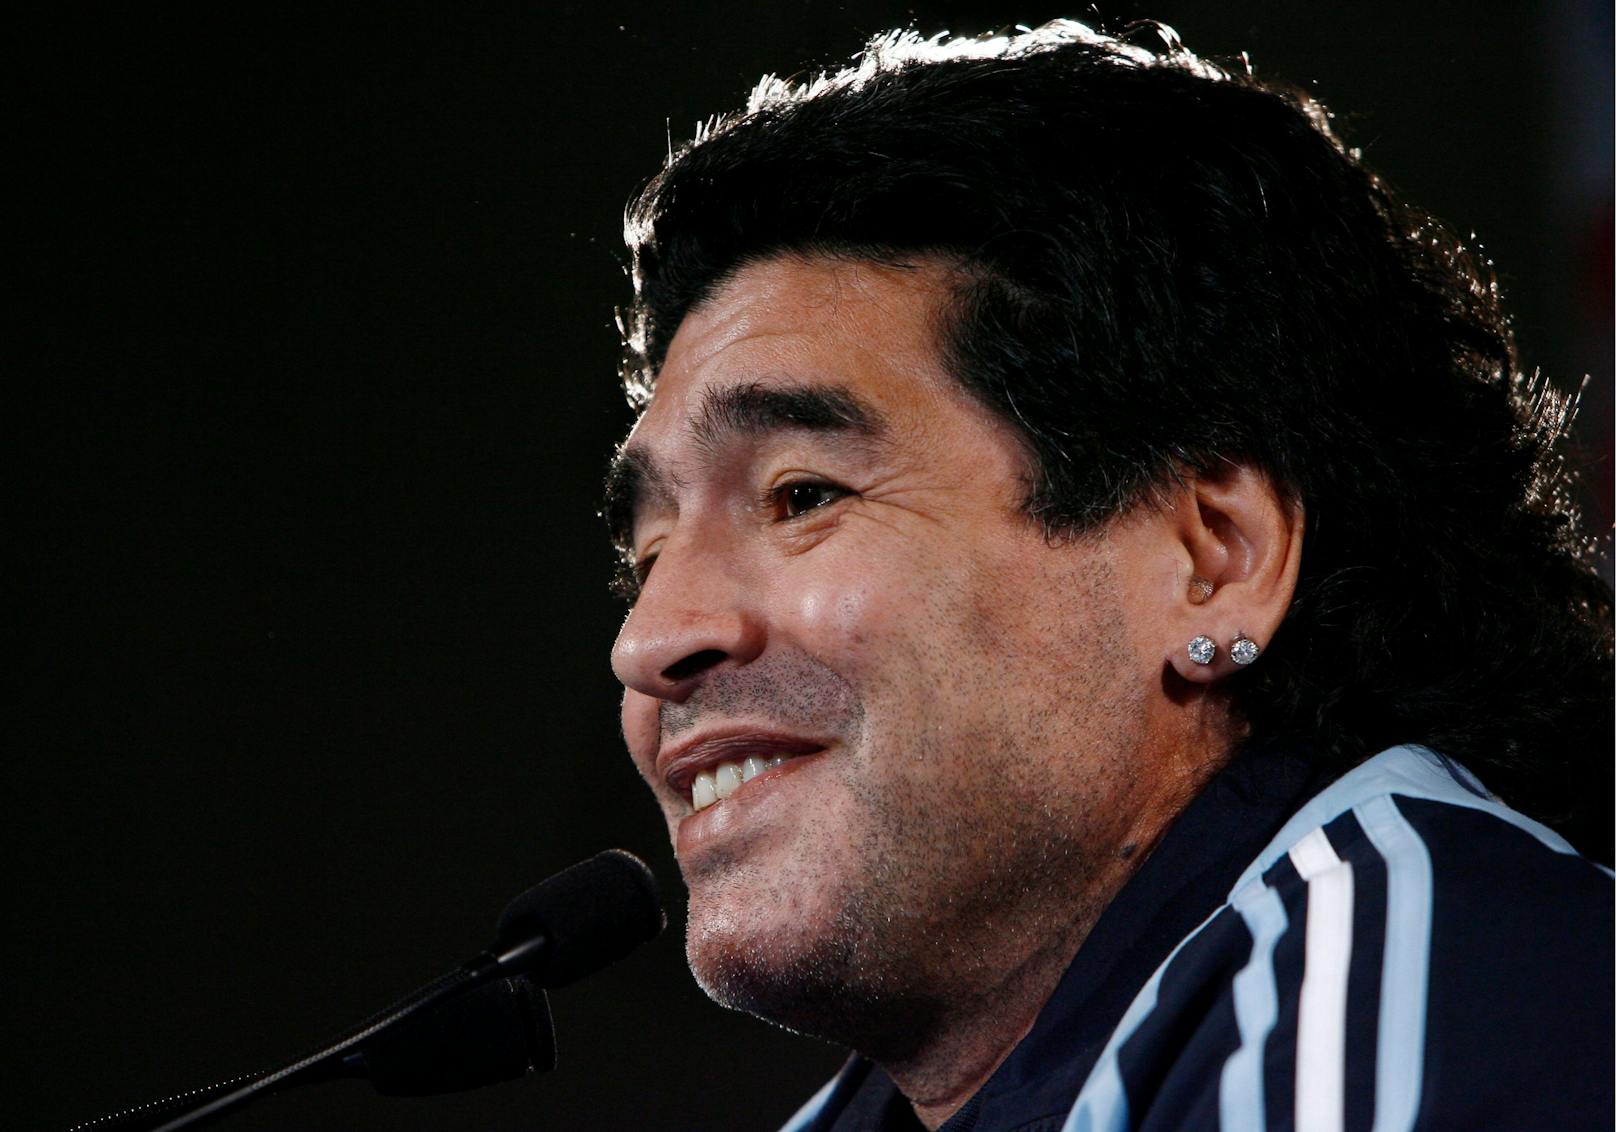 Nach seiner Karriere arbeitet Maradona als Trainer, zwei Mal war er Teamchef seines Heimatlandes Argentinien.